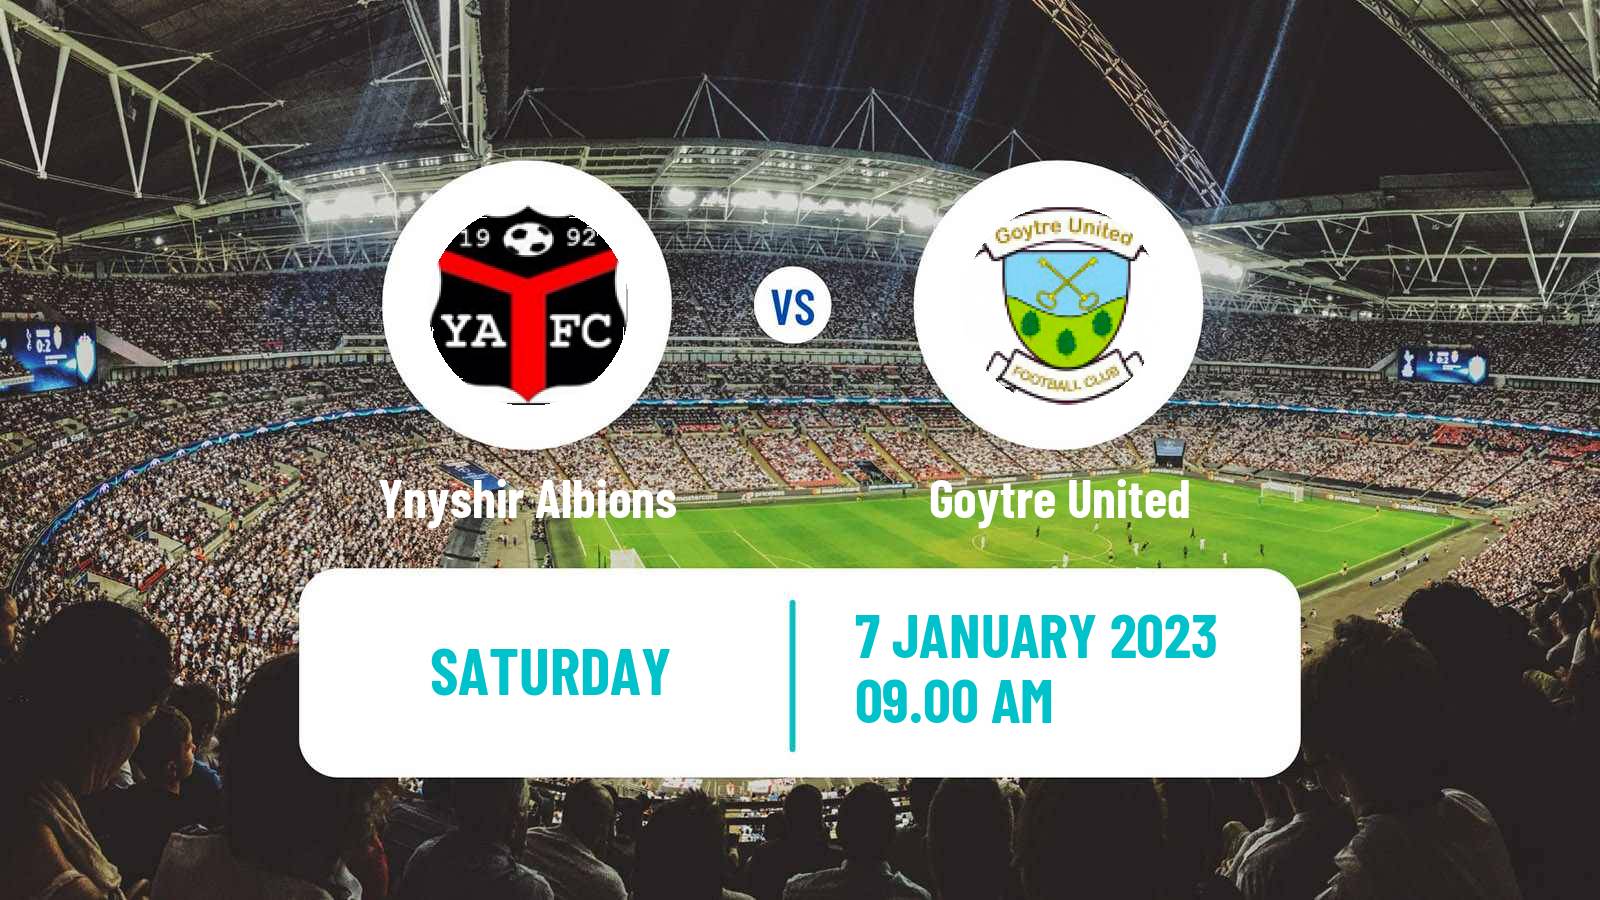 Soccer Welsh Cymru South Ynyshir Albions - Goytre United